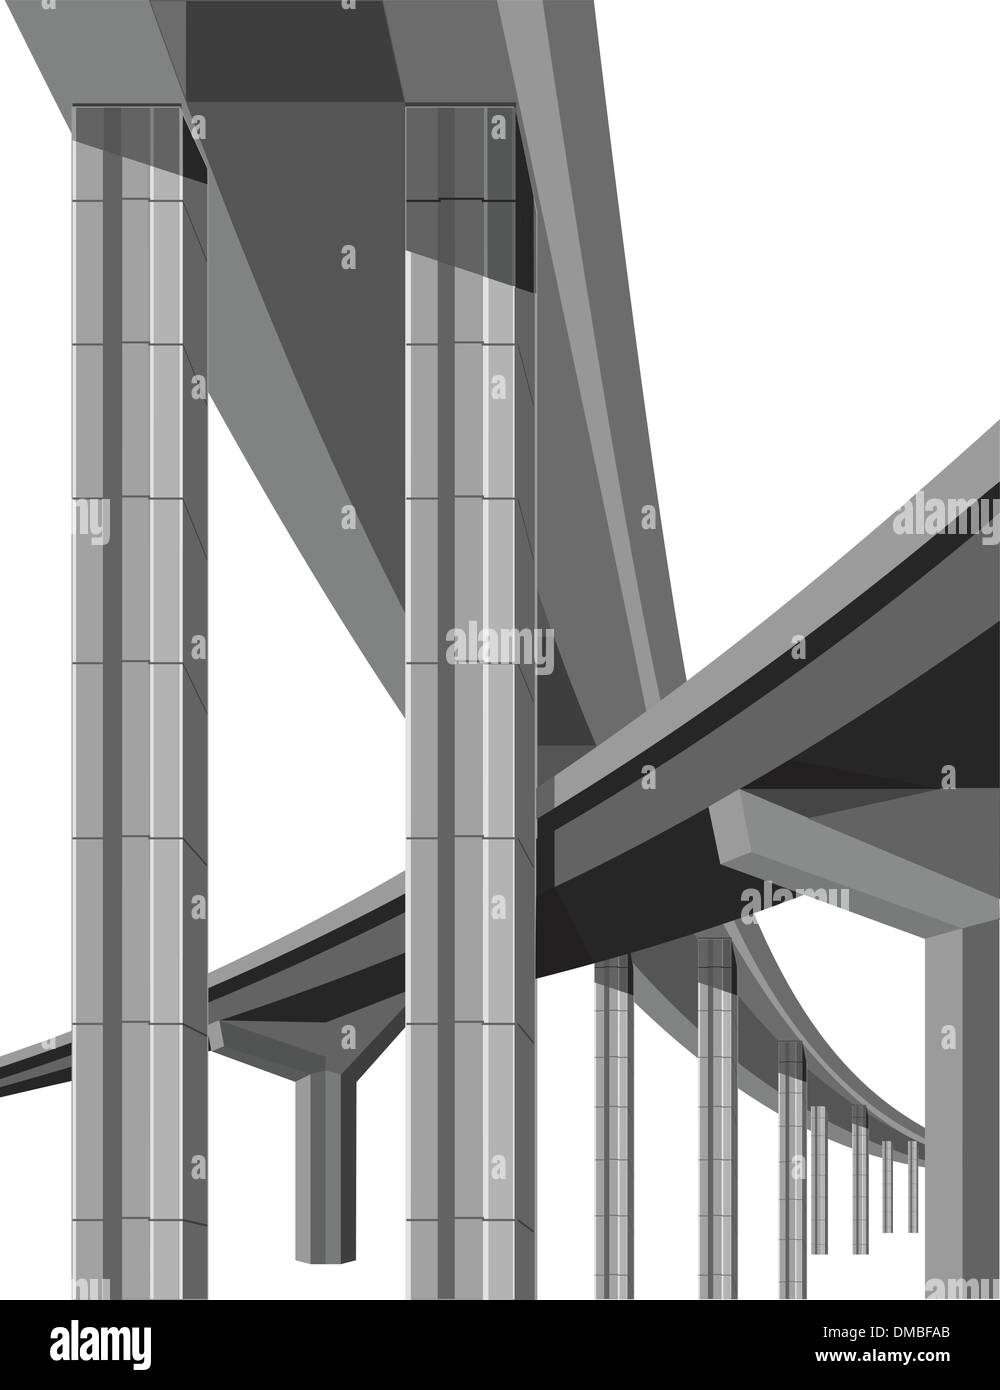 Ponts routiers Illustration de Vecteur